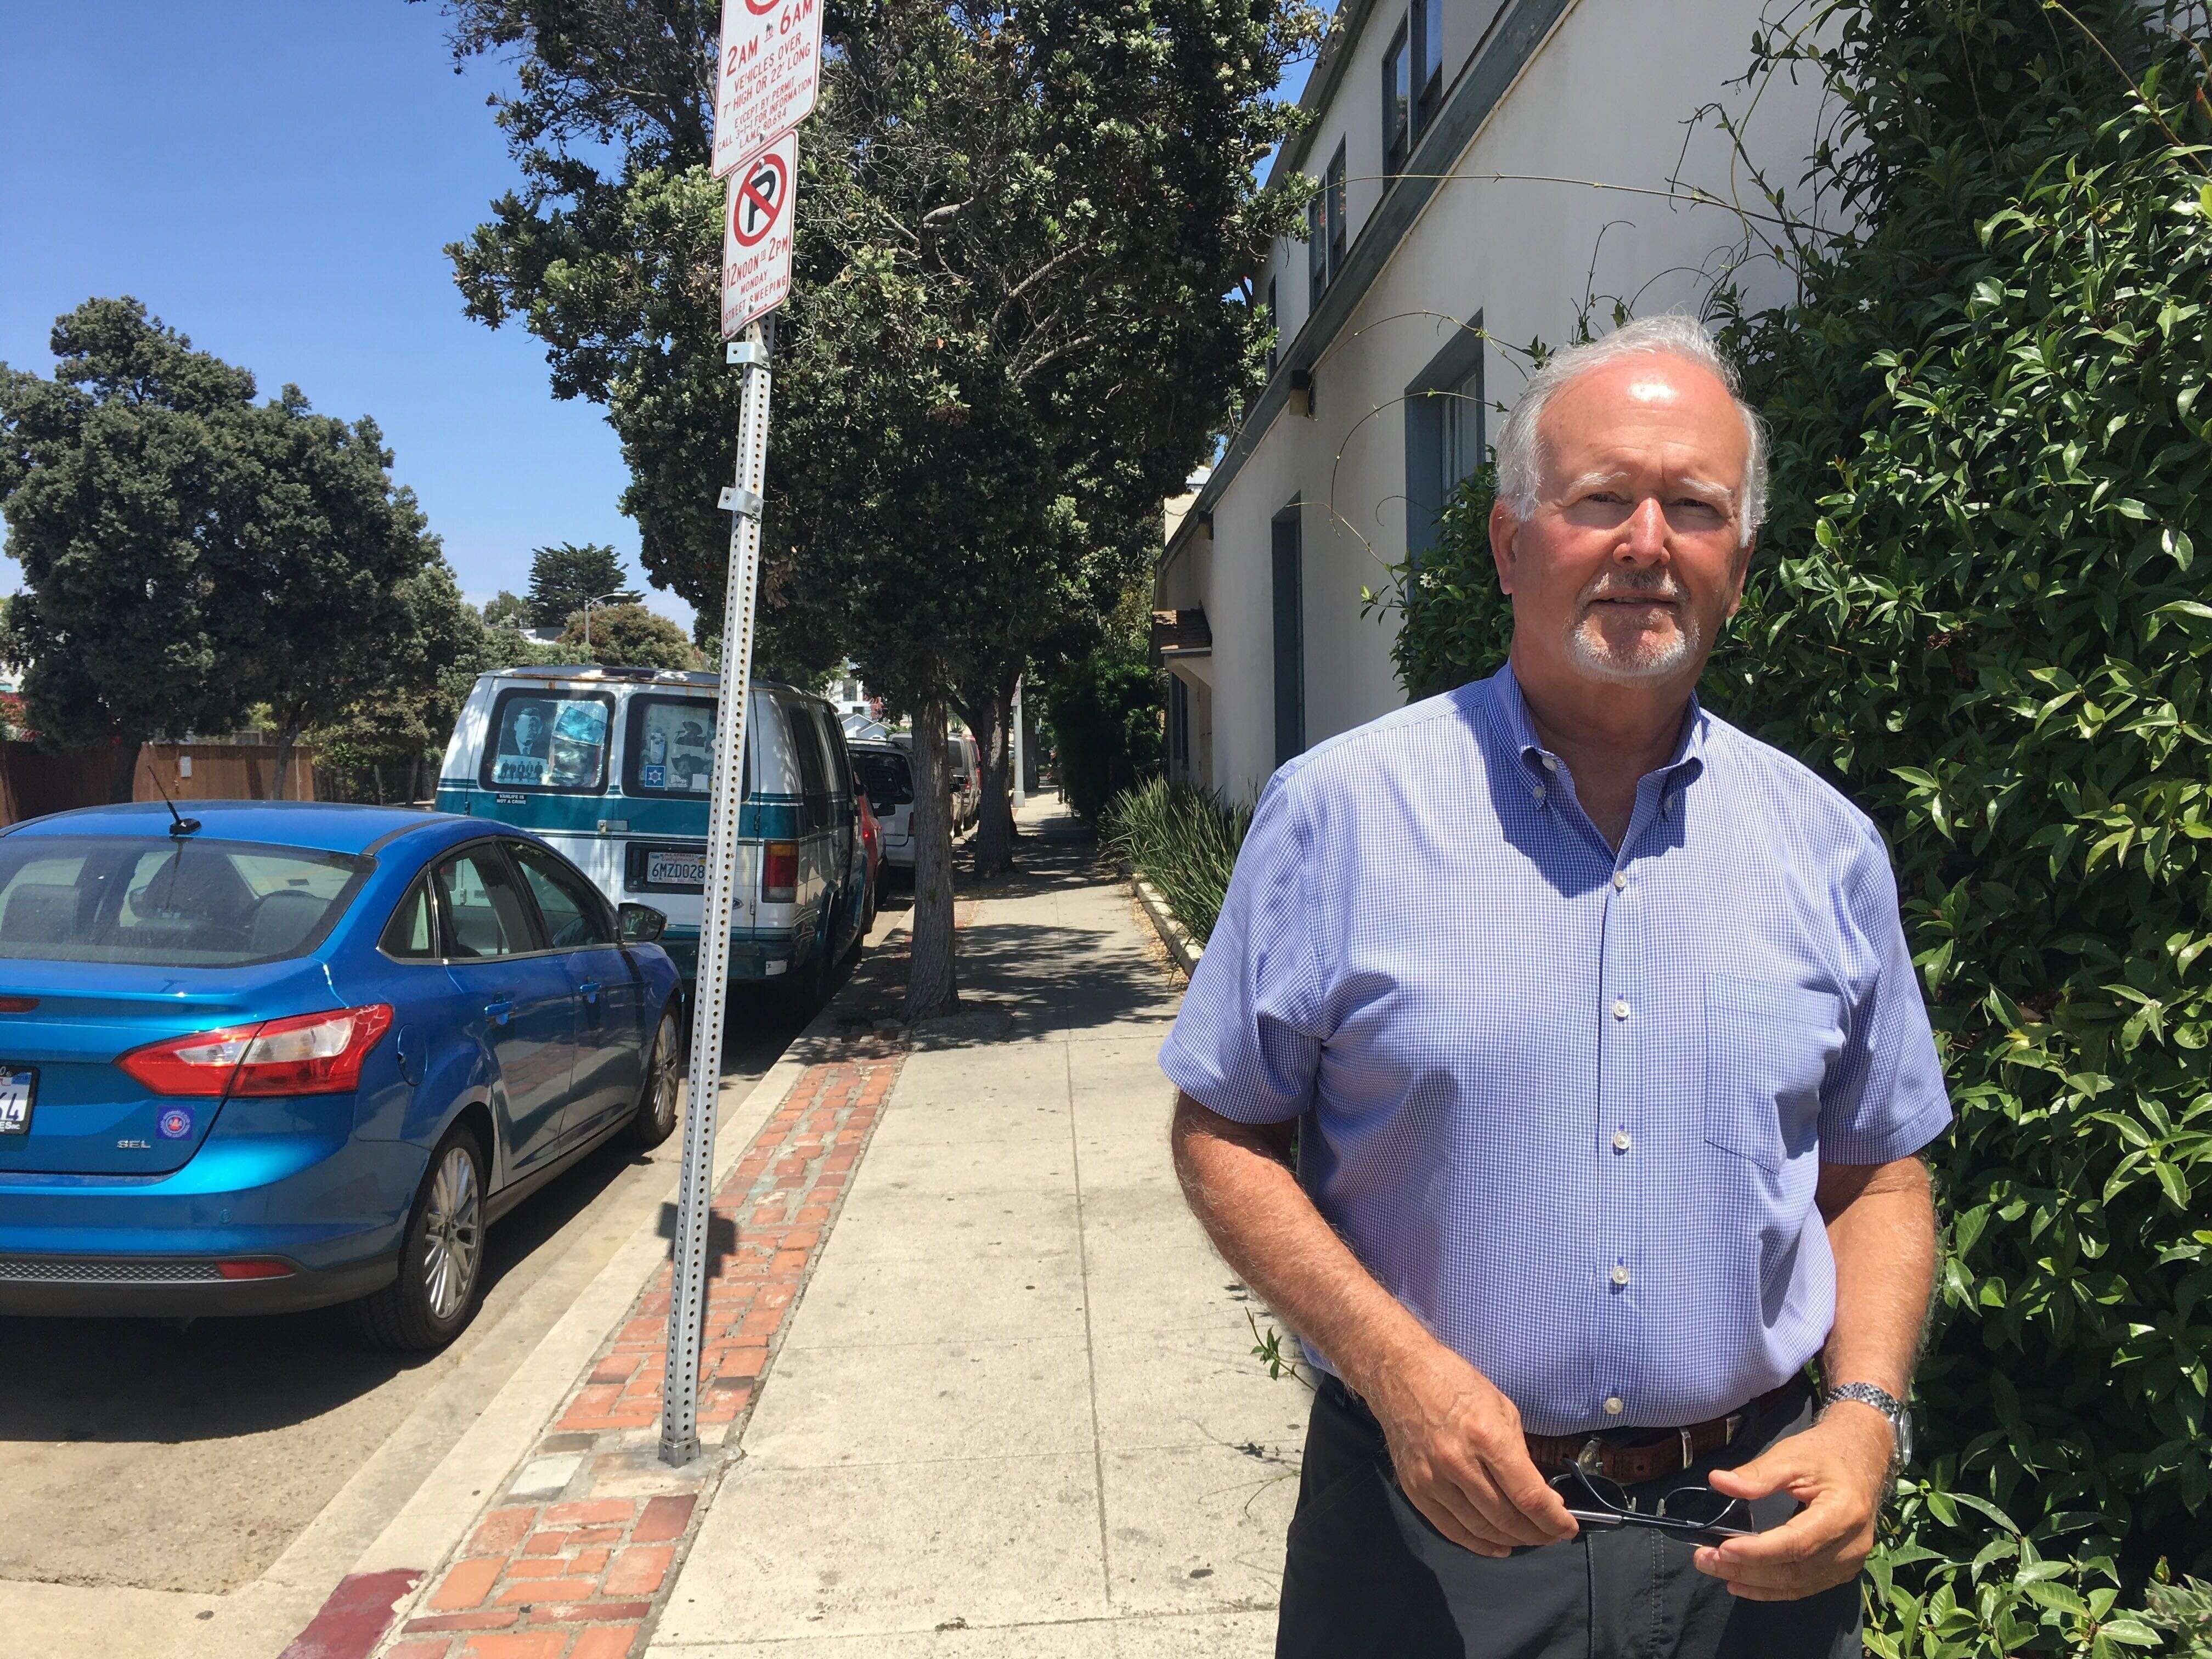 Mark Ryavec, président de la Venice Stakeholders Association, souhaite que les autorités durcissent leur politique à l'égard des personnes vivant dans leur voiture.